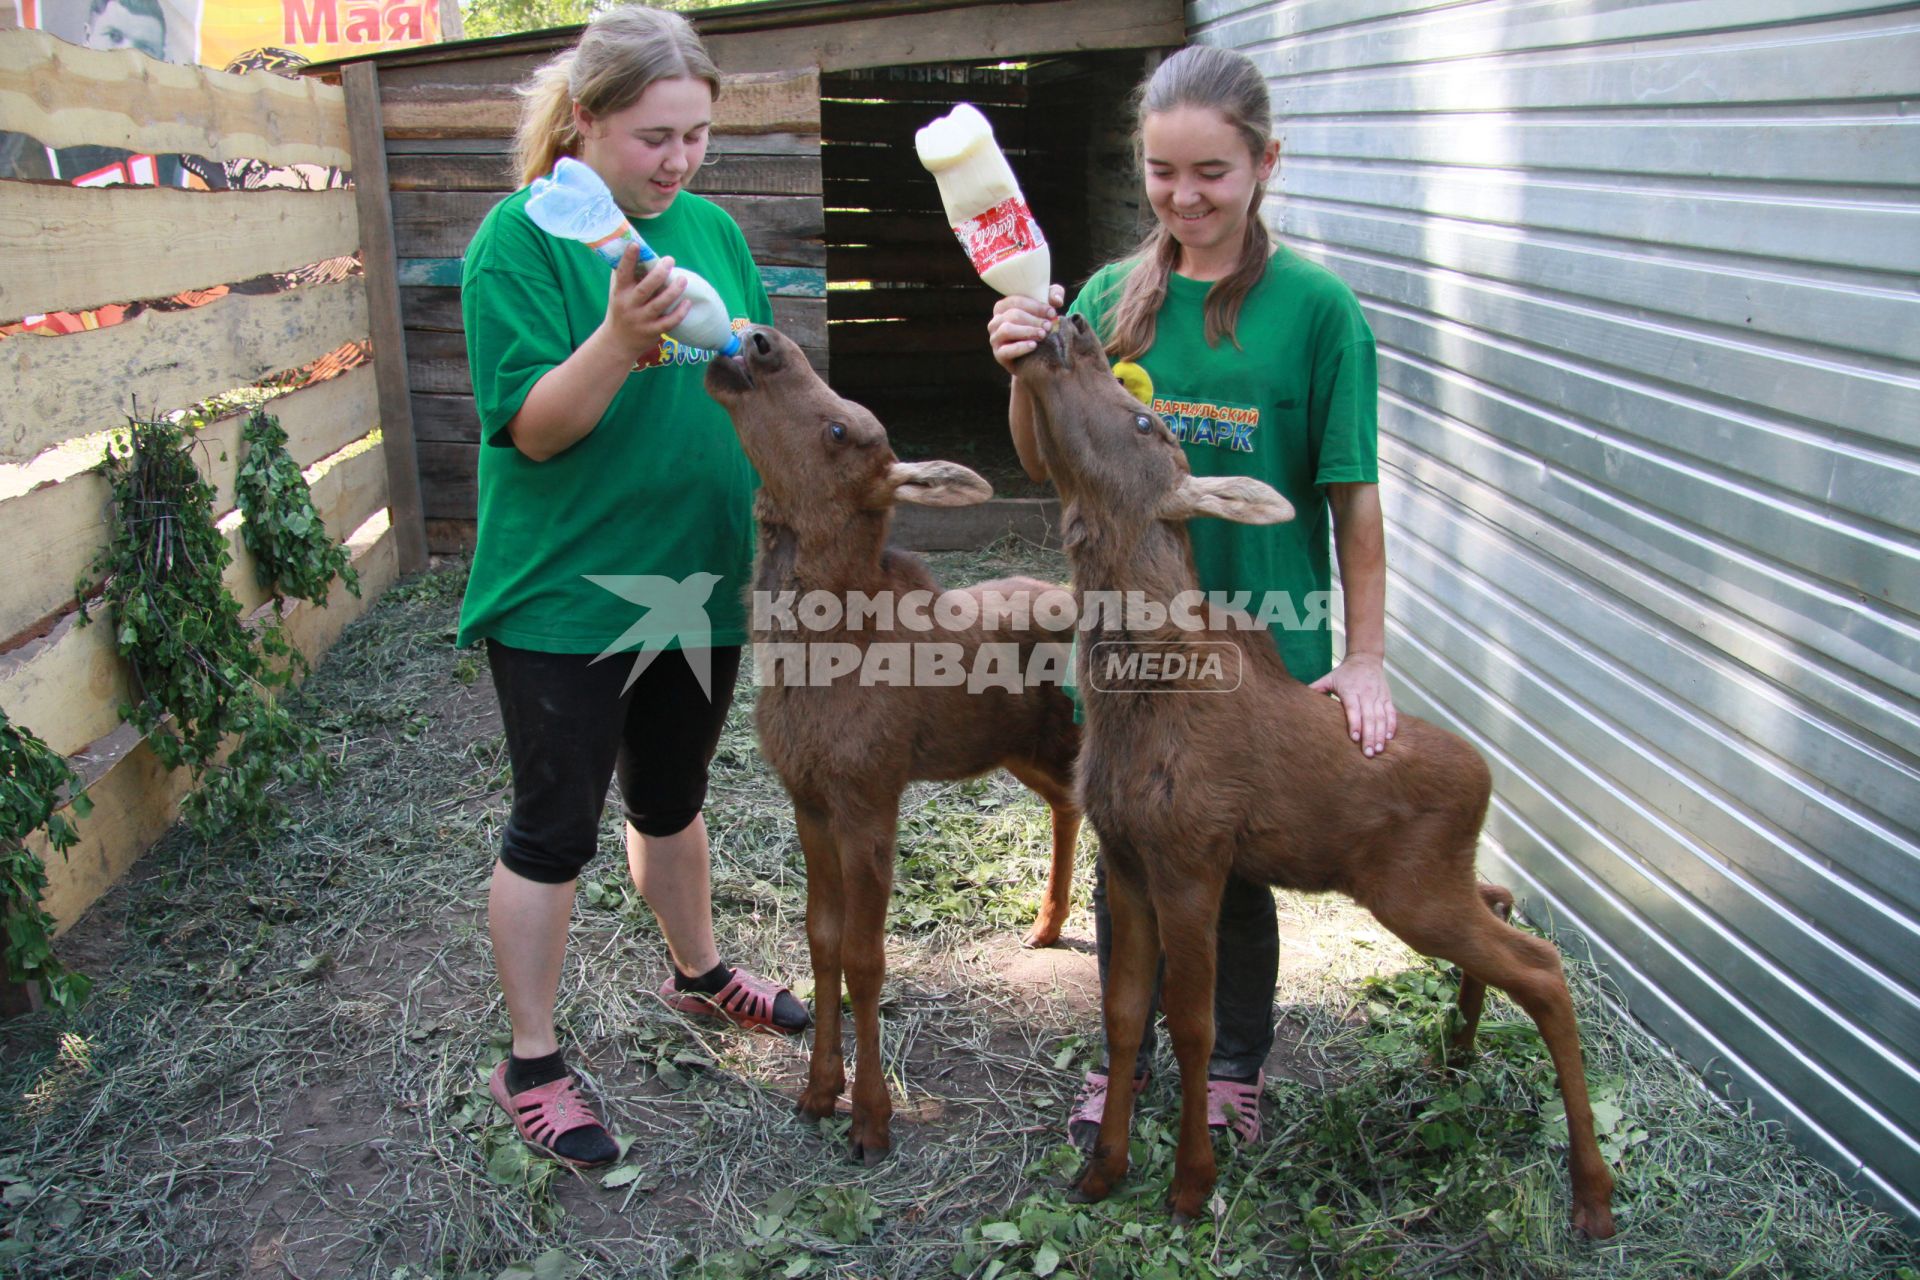 Сотрудники барнаульского зоопарка кормят двух молодых лосят молоком из пластиковых бутылок.